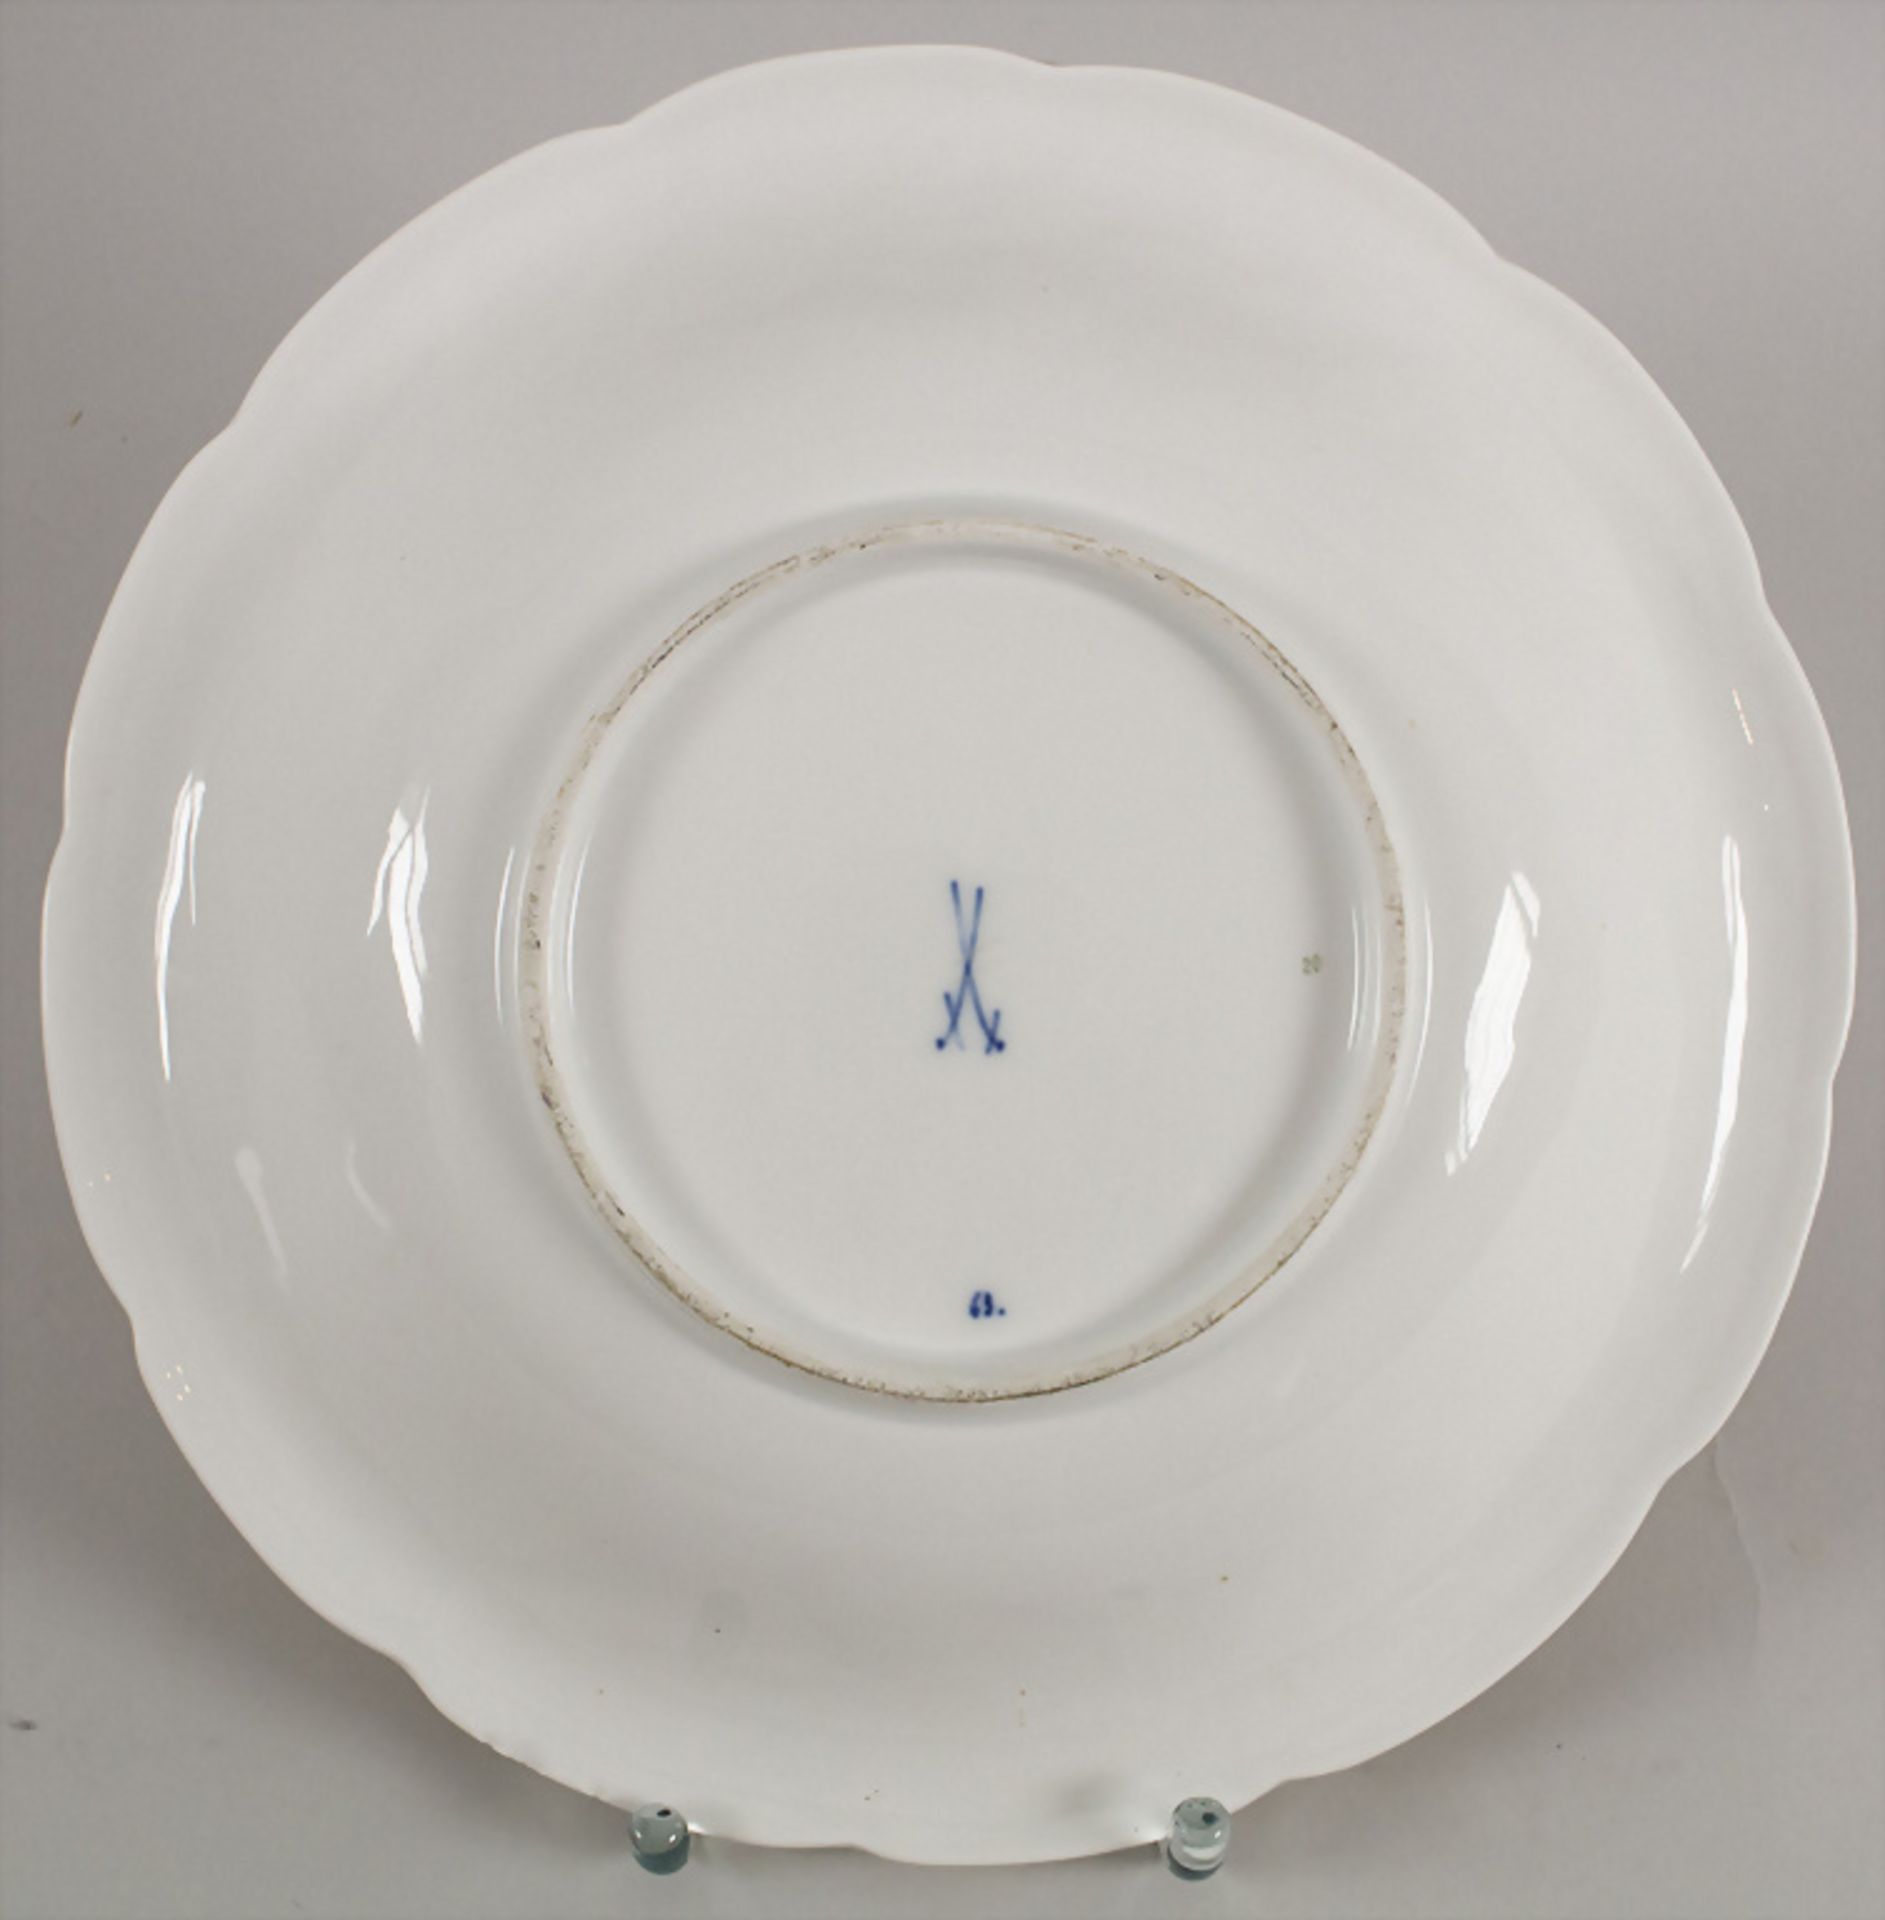 Prunkteller / A splendor plate, Meissen, 1860-1924 - Image 2 of 2